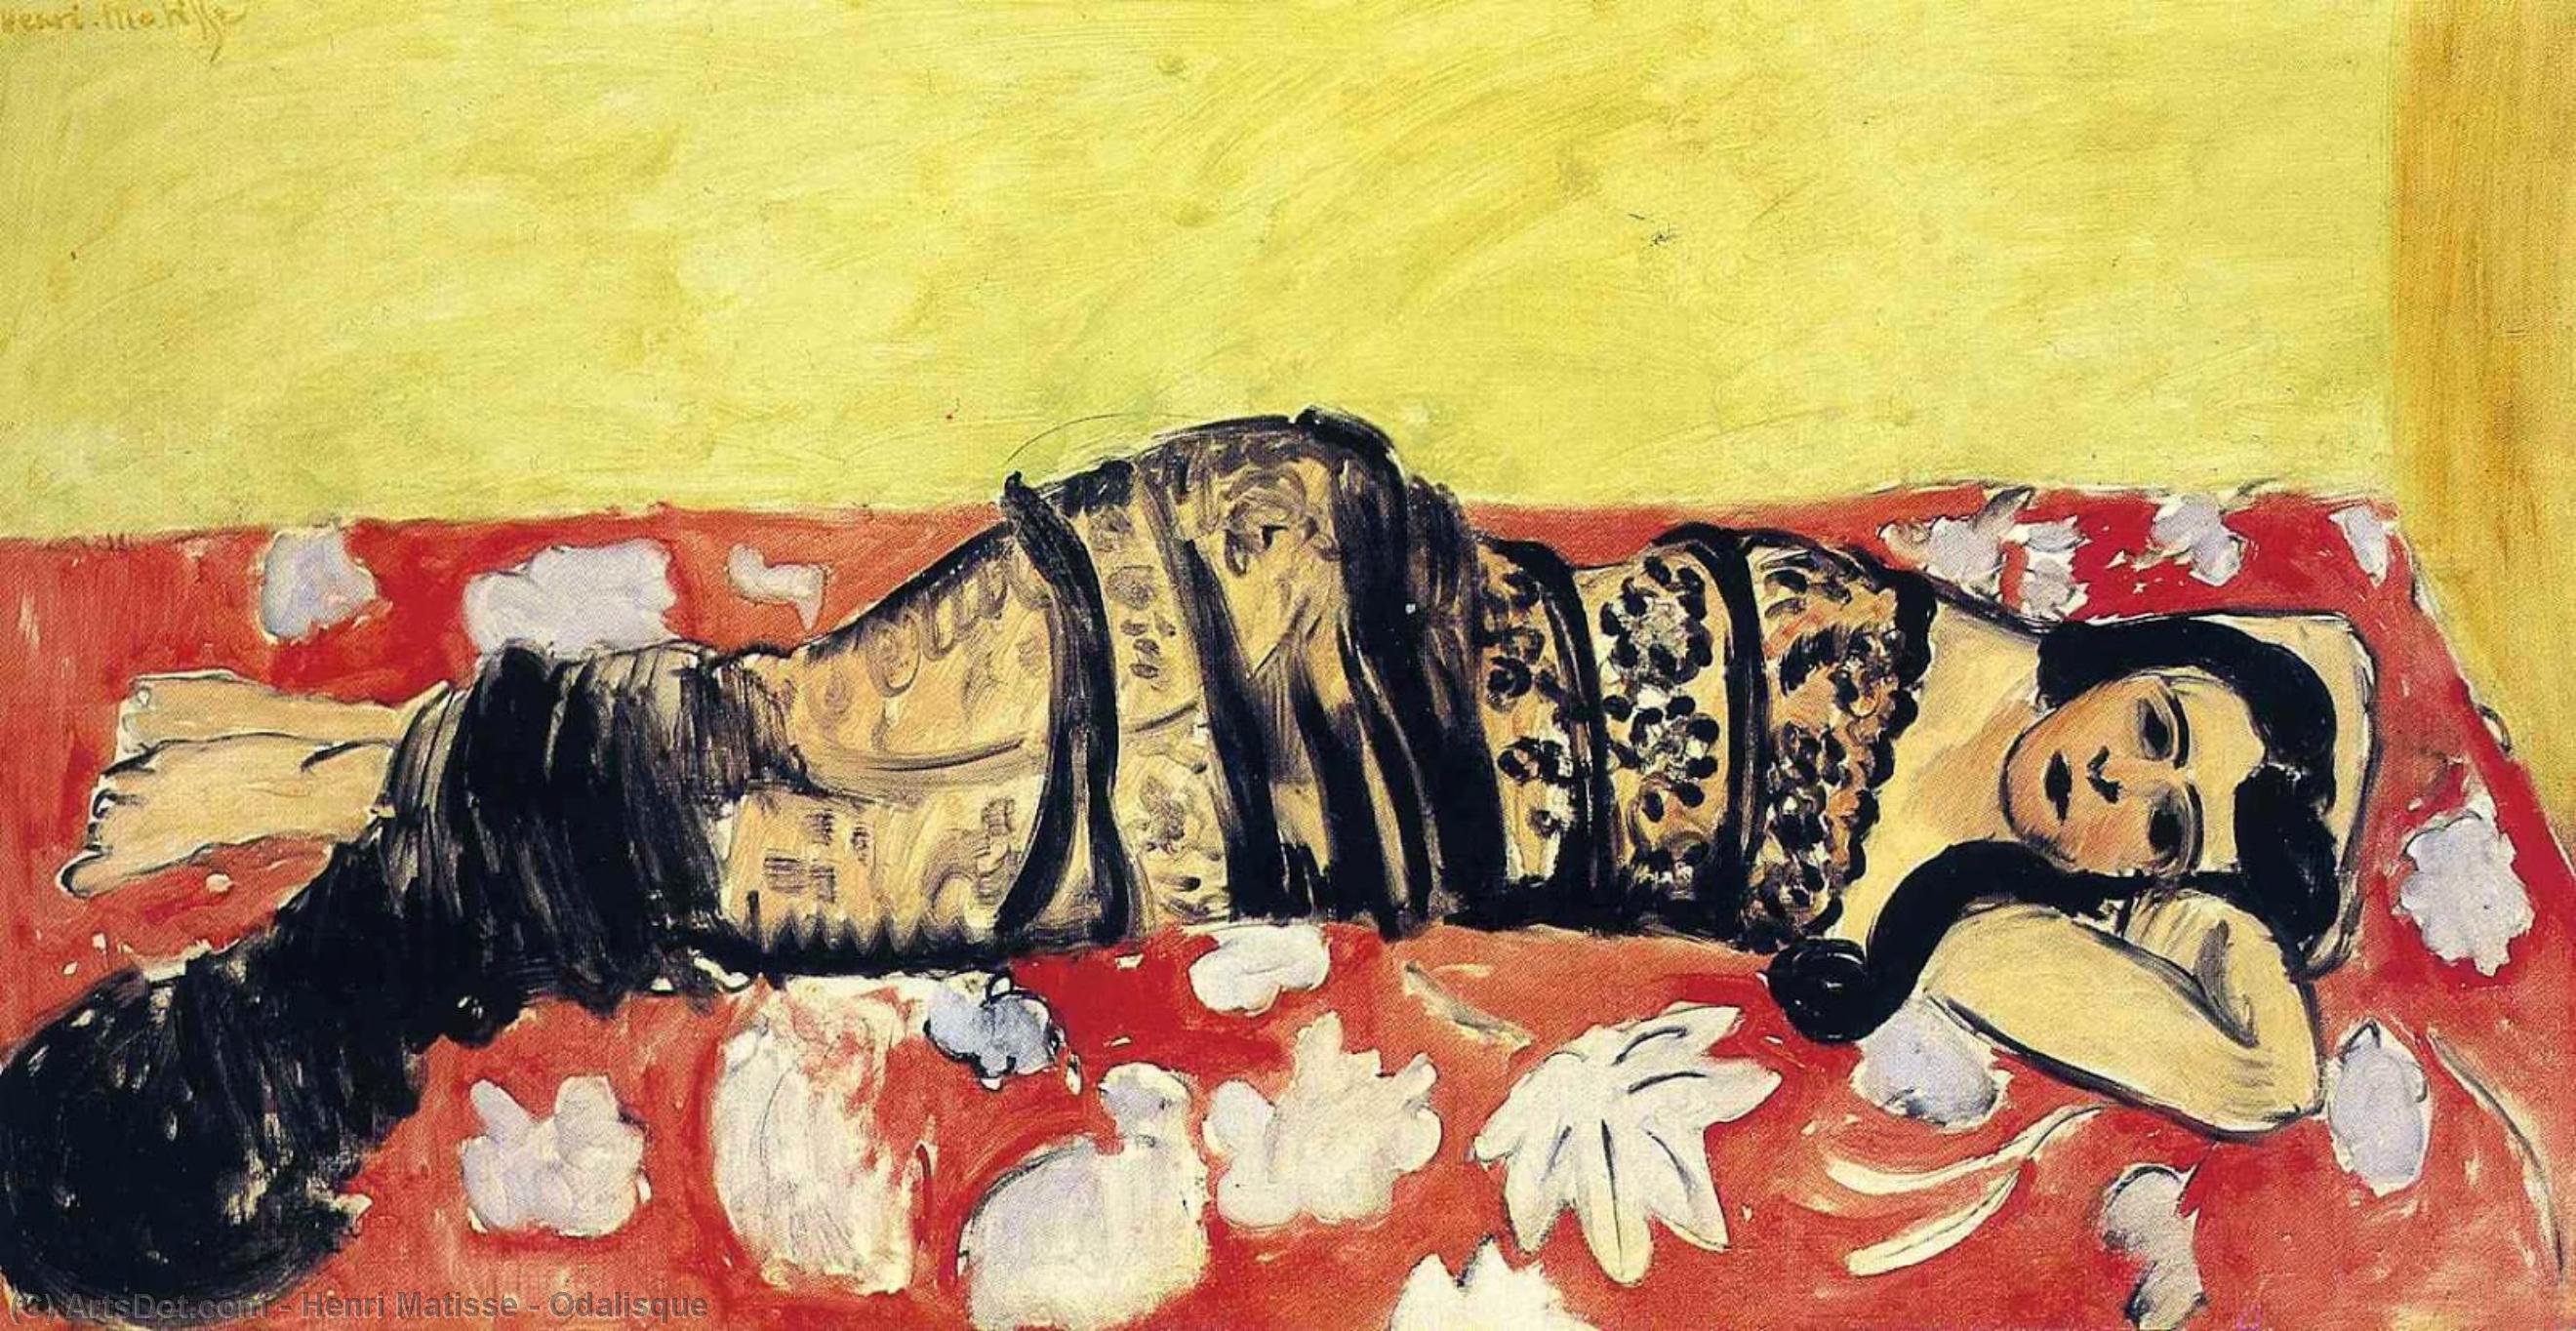 WikiOO.org - Εγκυκλοπαίδεια Καλών Τεχνών - Ζωγραφική, έργα τέχνης Henri Matisse - Odalisque